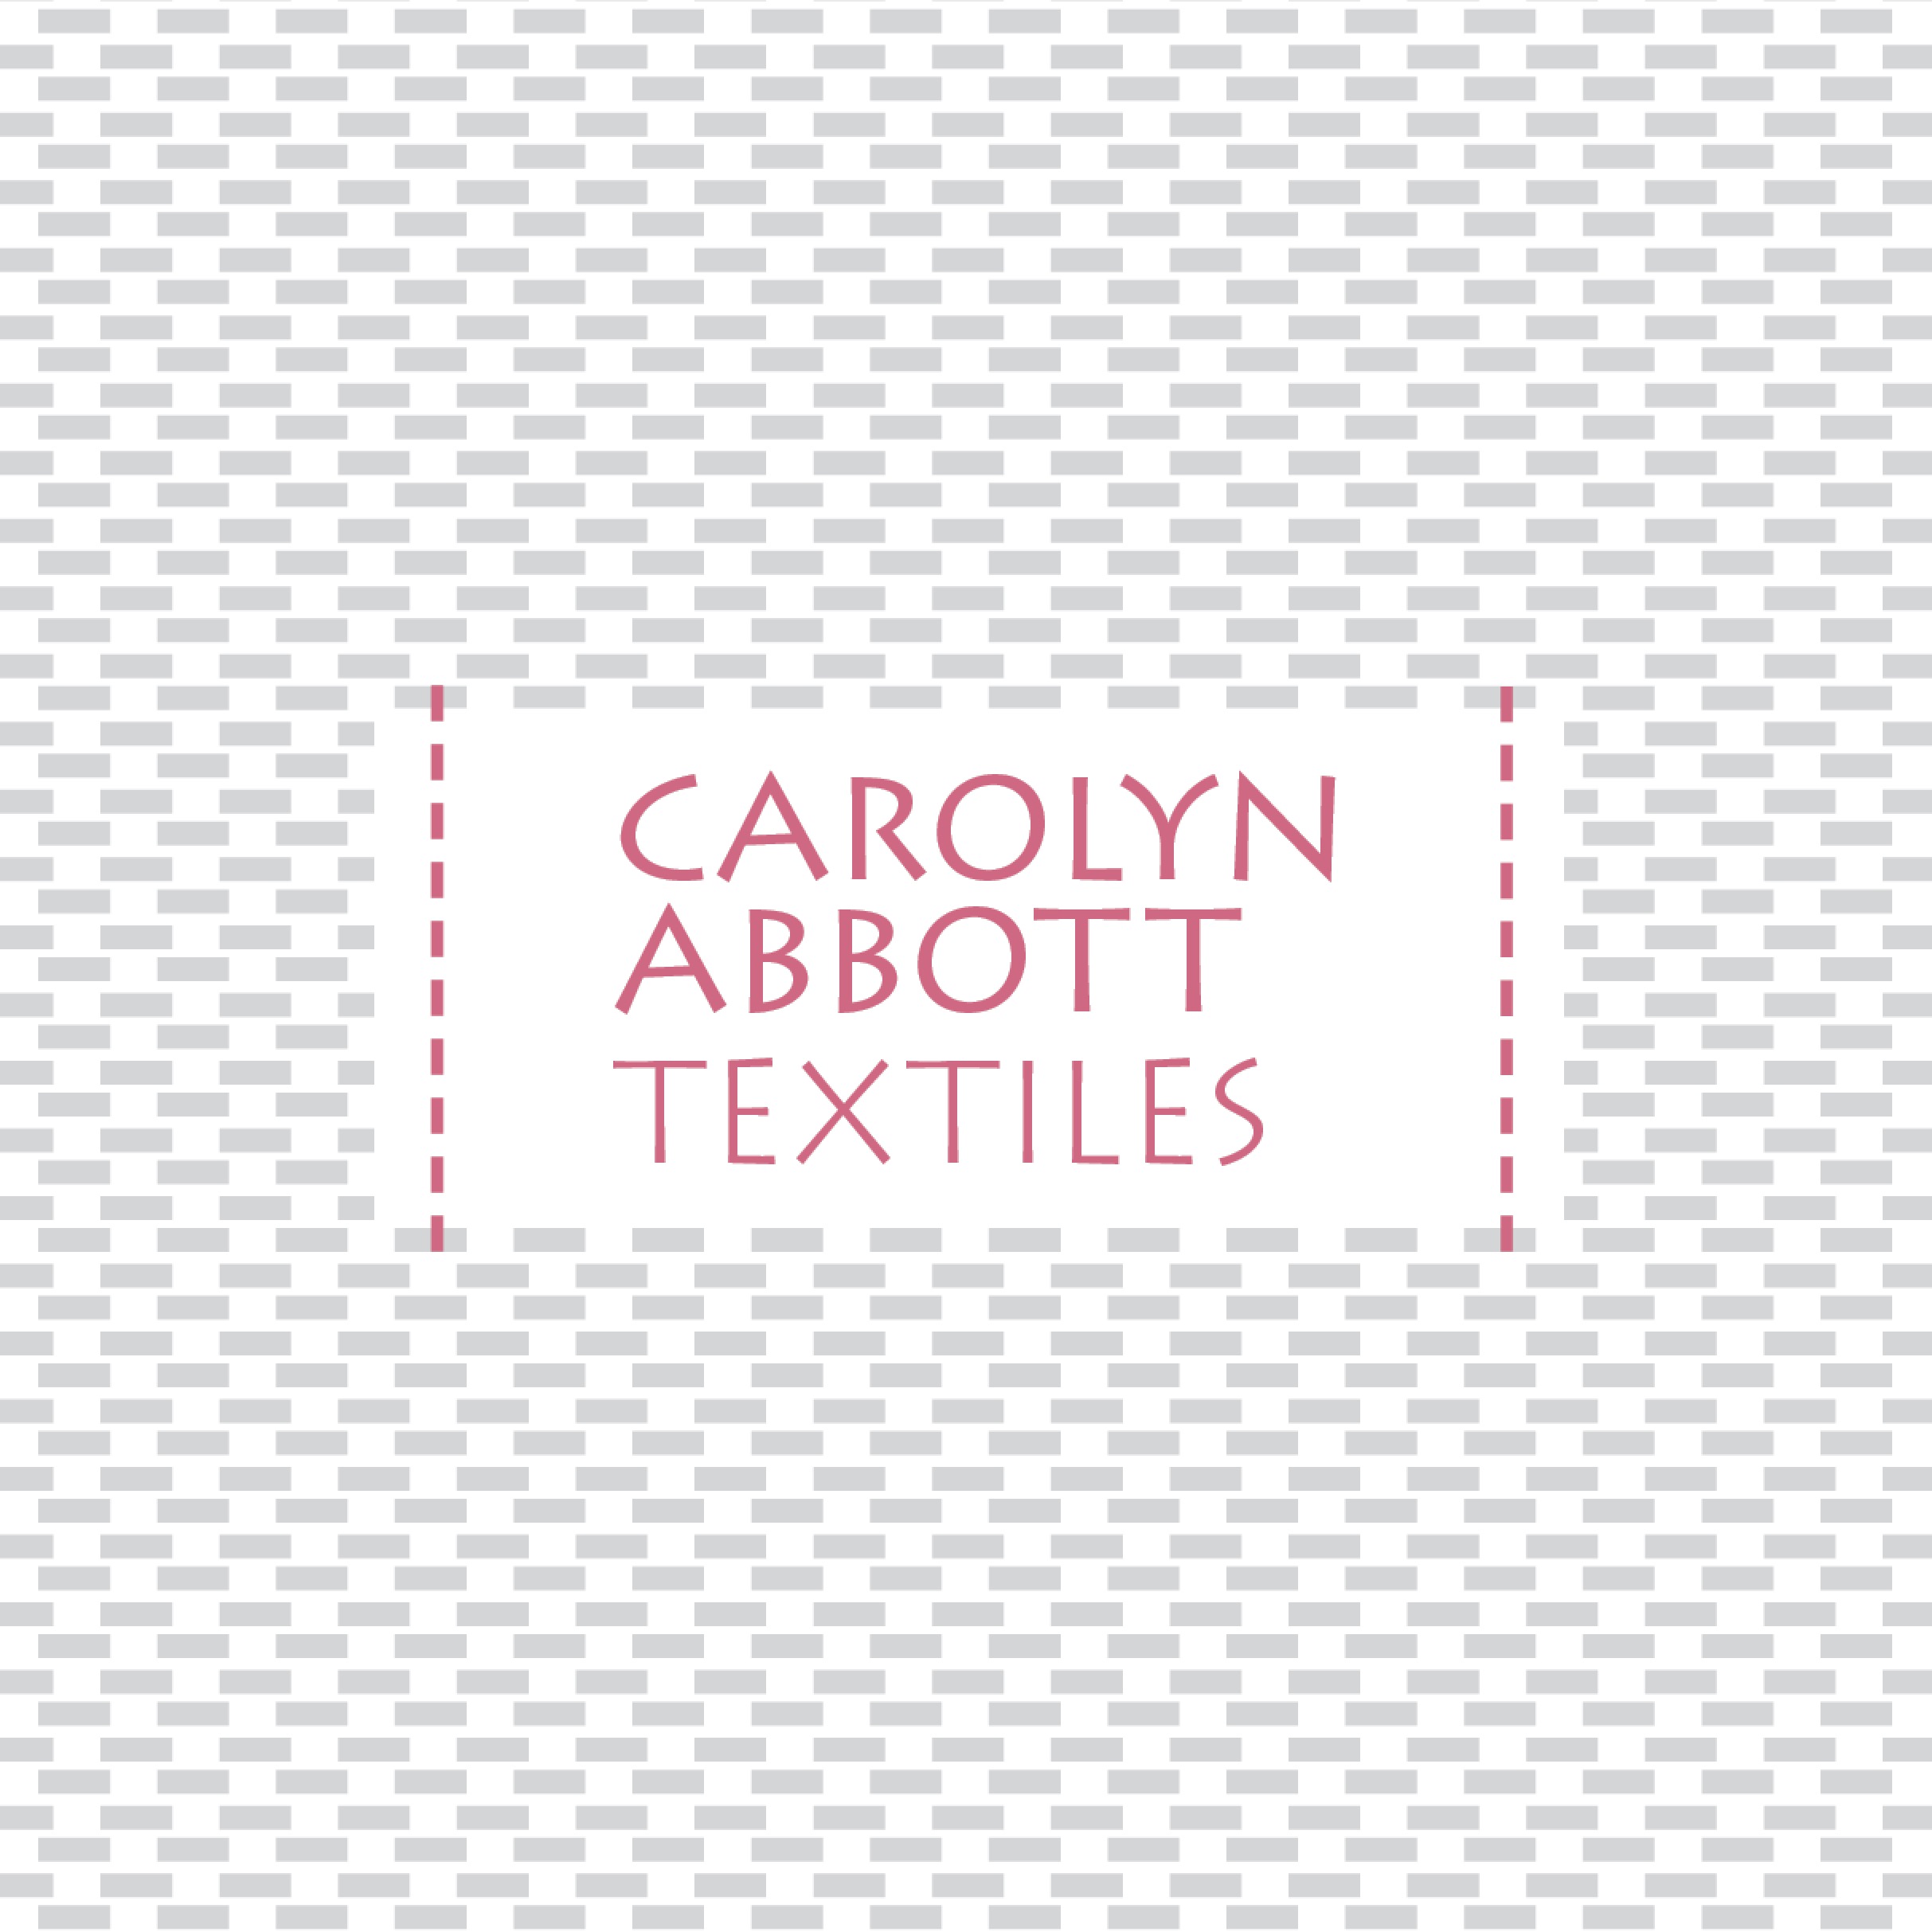 Carolyn Abbott Textiles